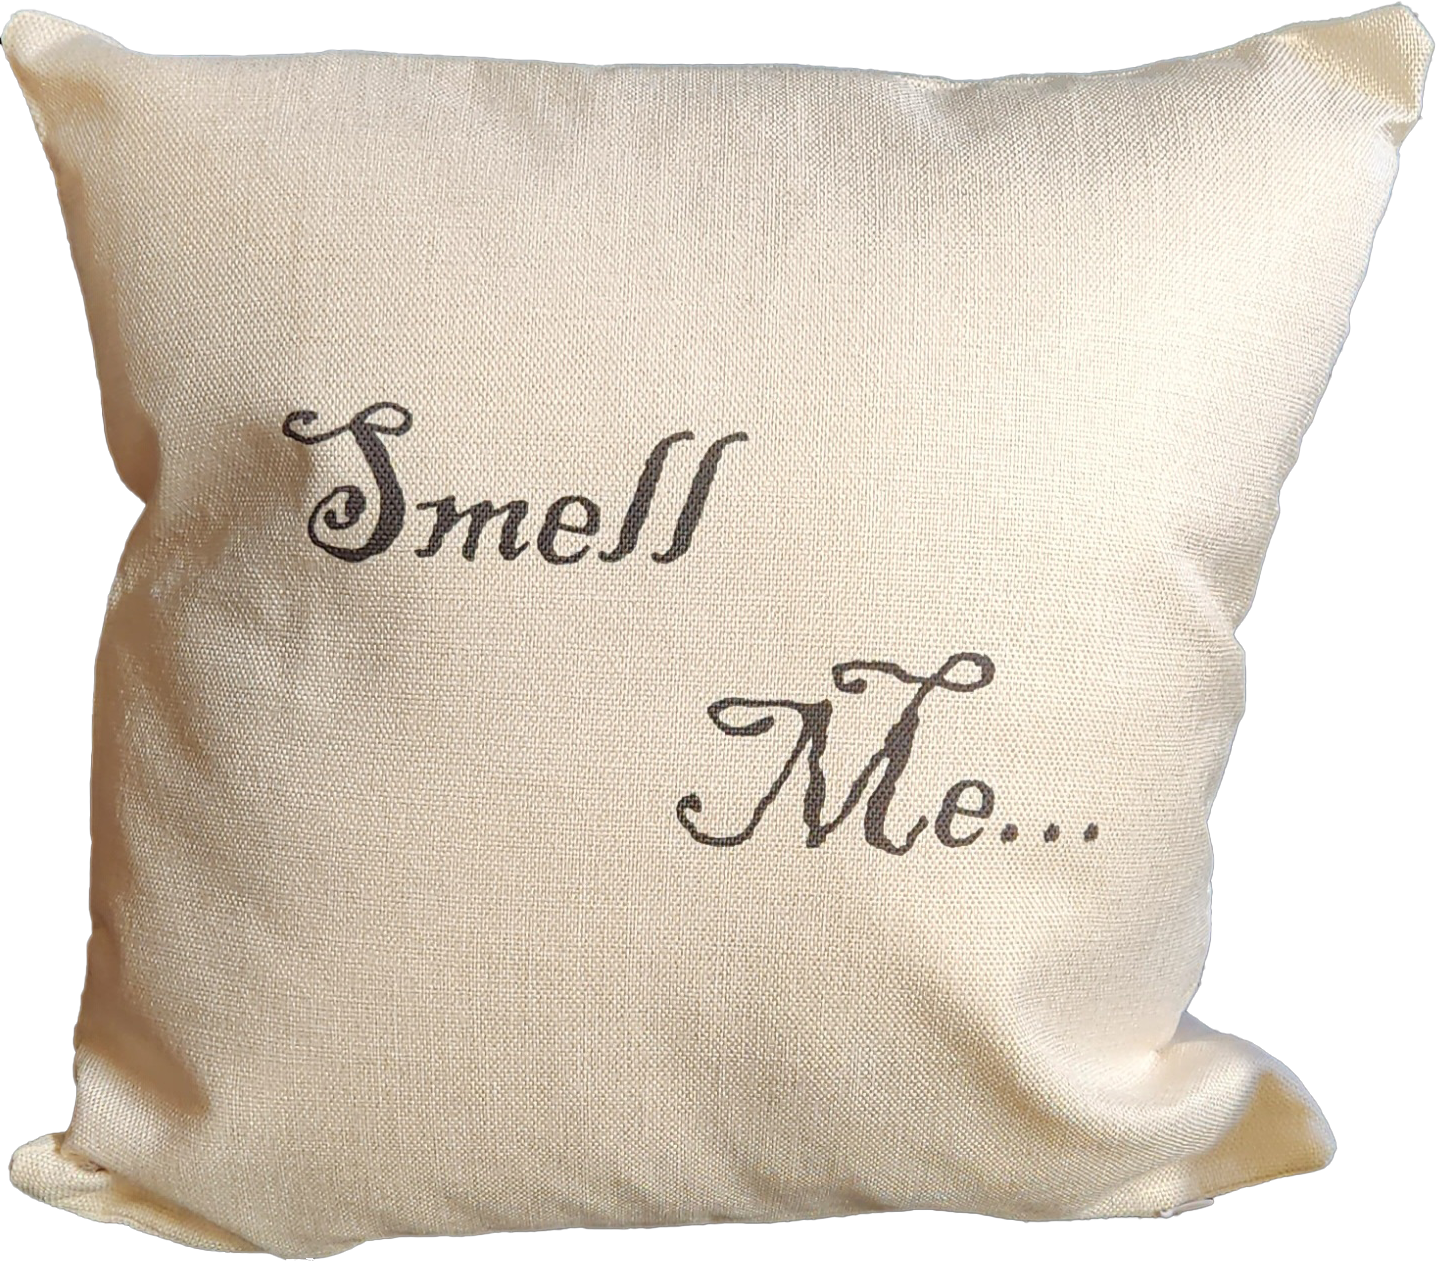 Smell Me/Do you Smell Chloroform? Decorative Throw Pillow